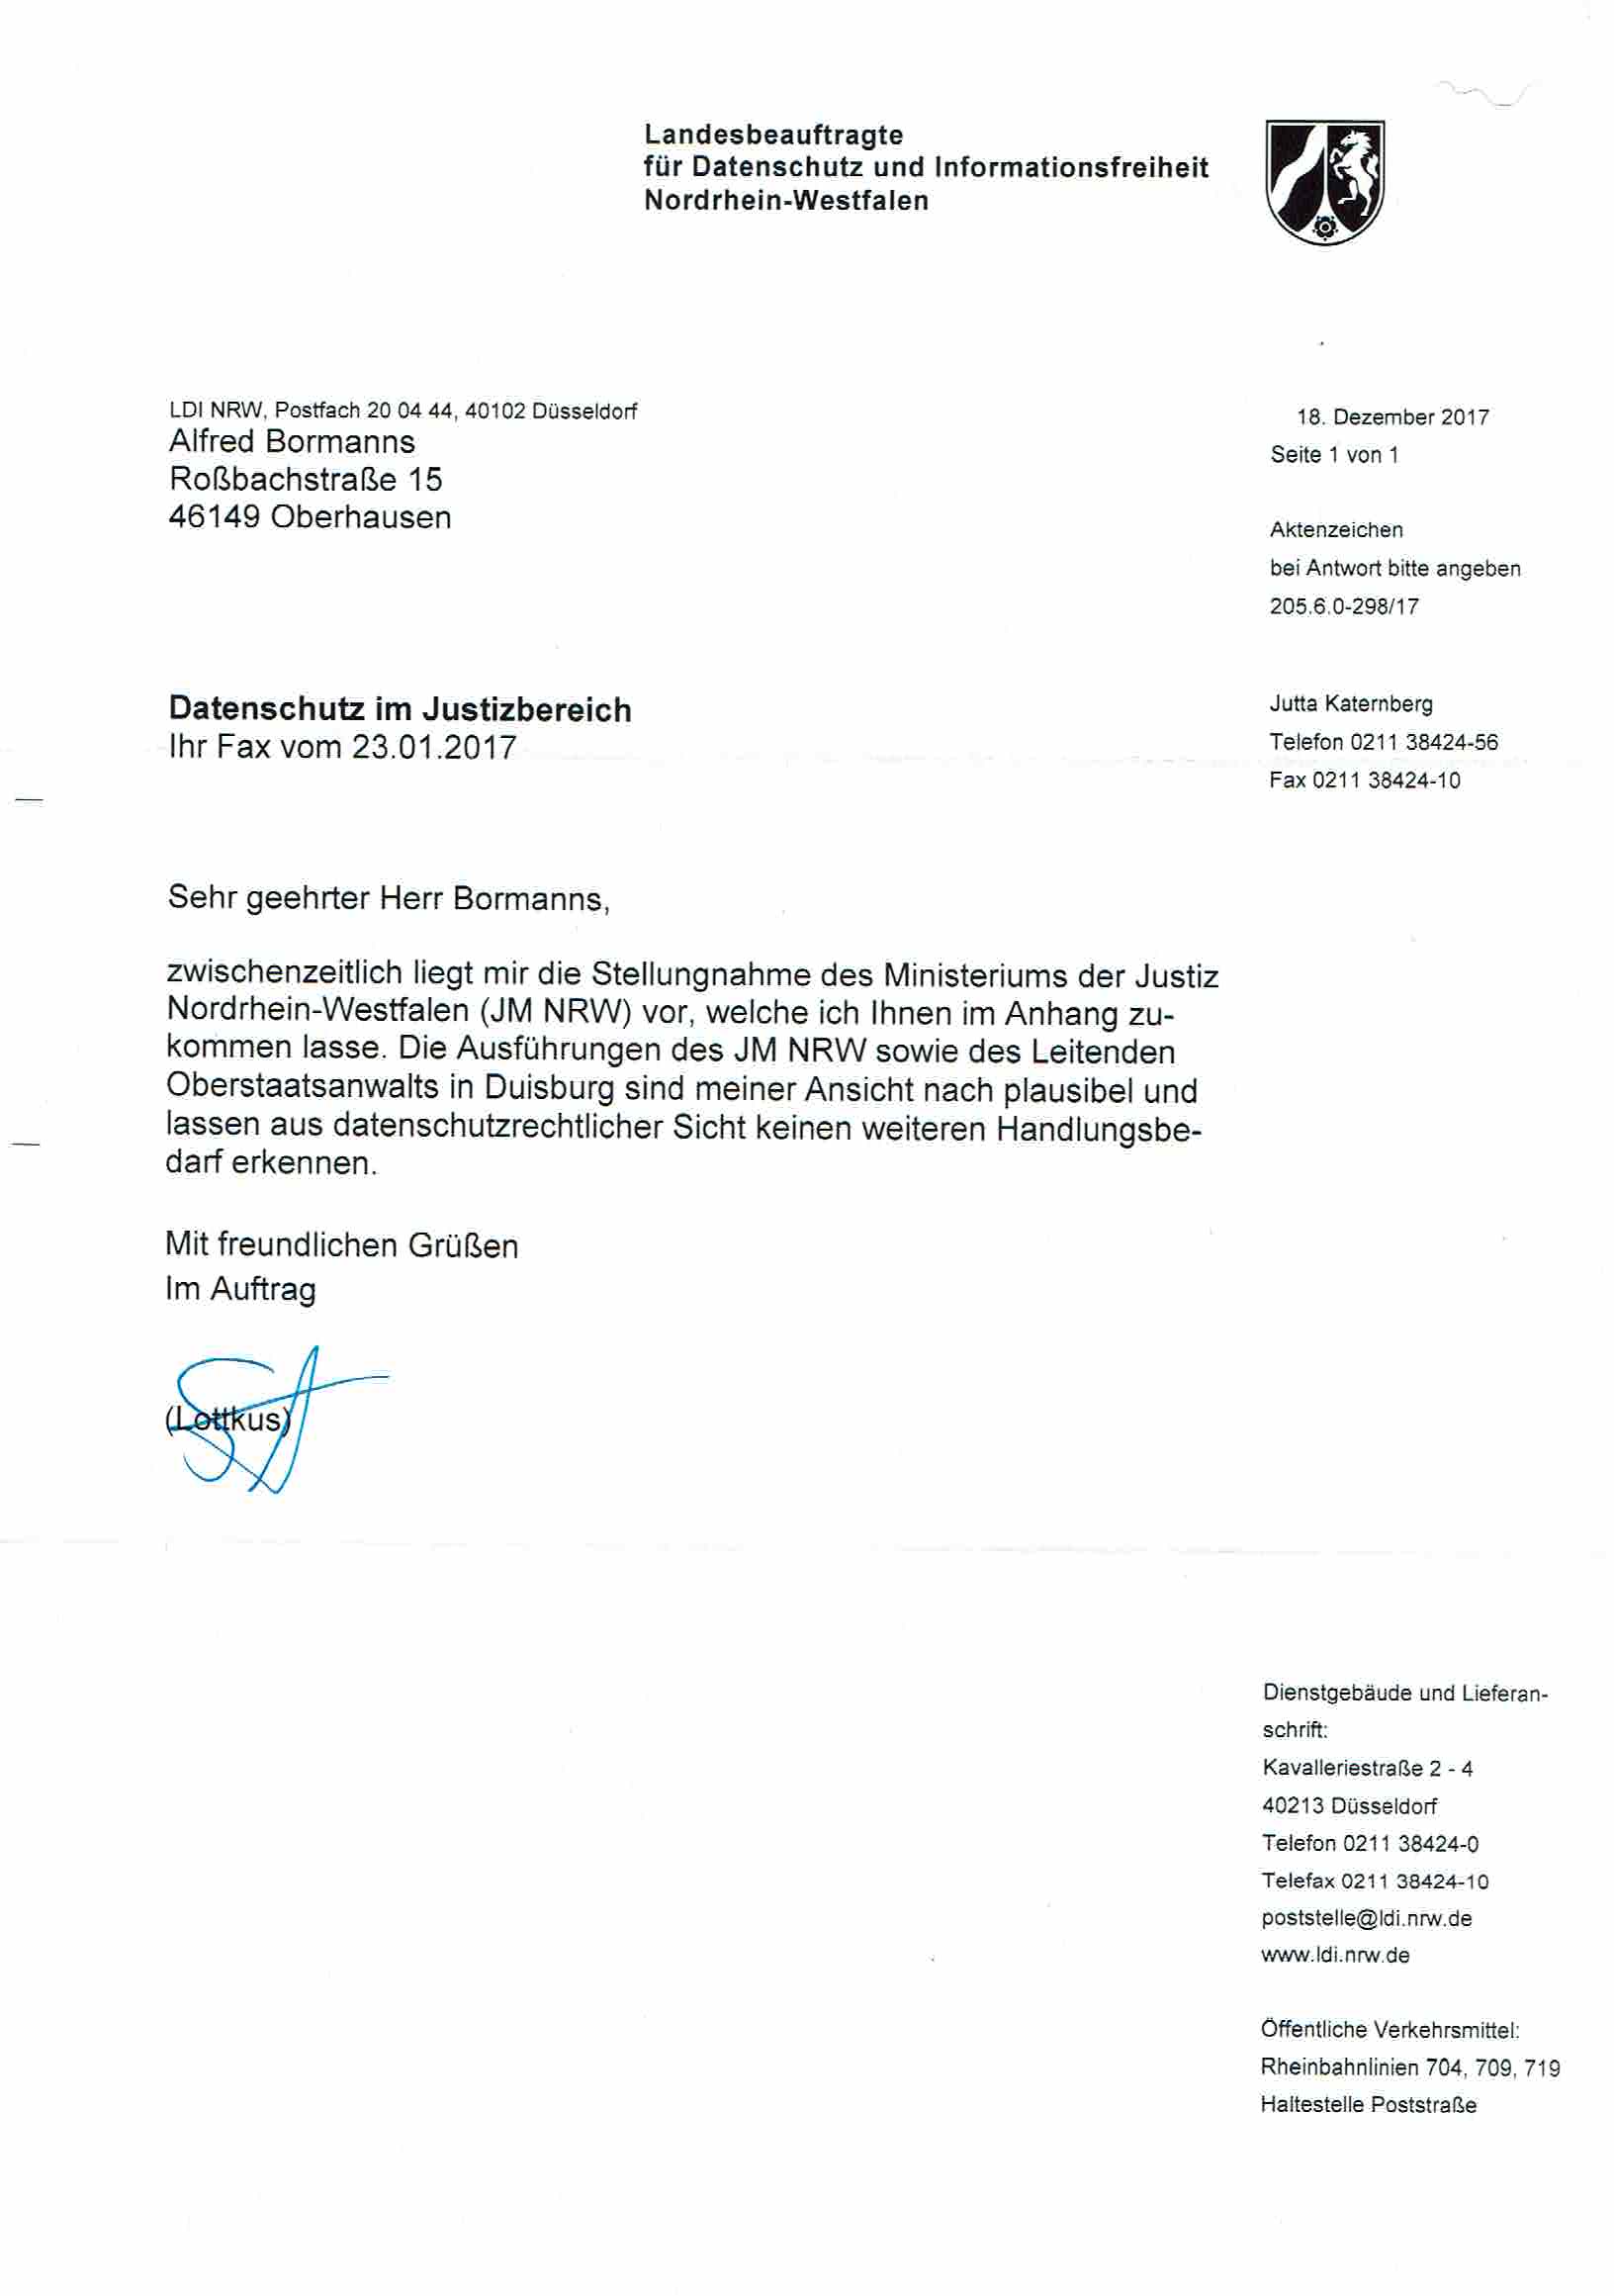 Bescheid der Landesbeauftragen für Datenschutz und Informationsfreiheit Nordrhein-Westfalen vom 18.12.2017